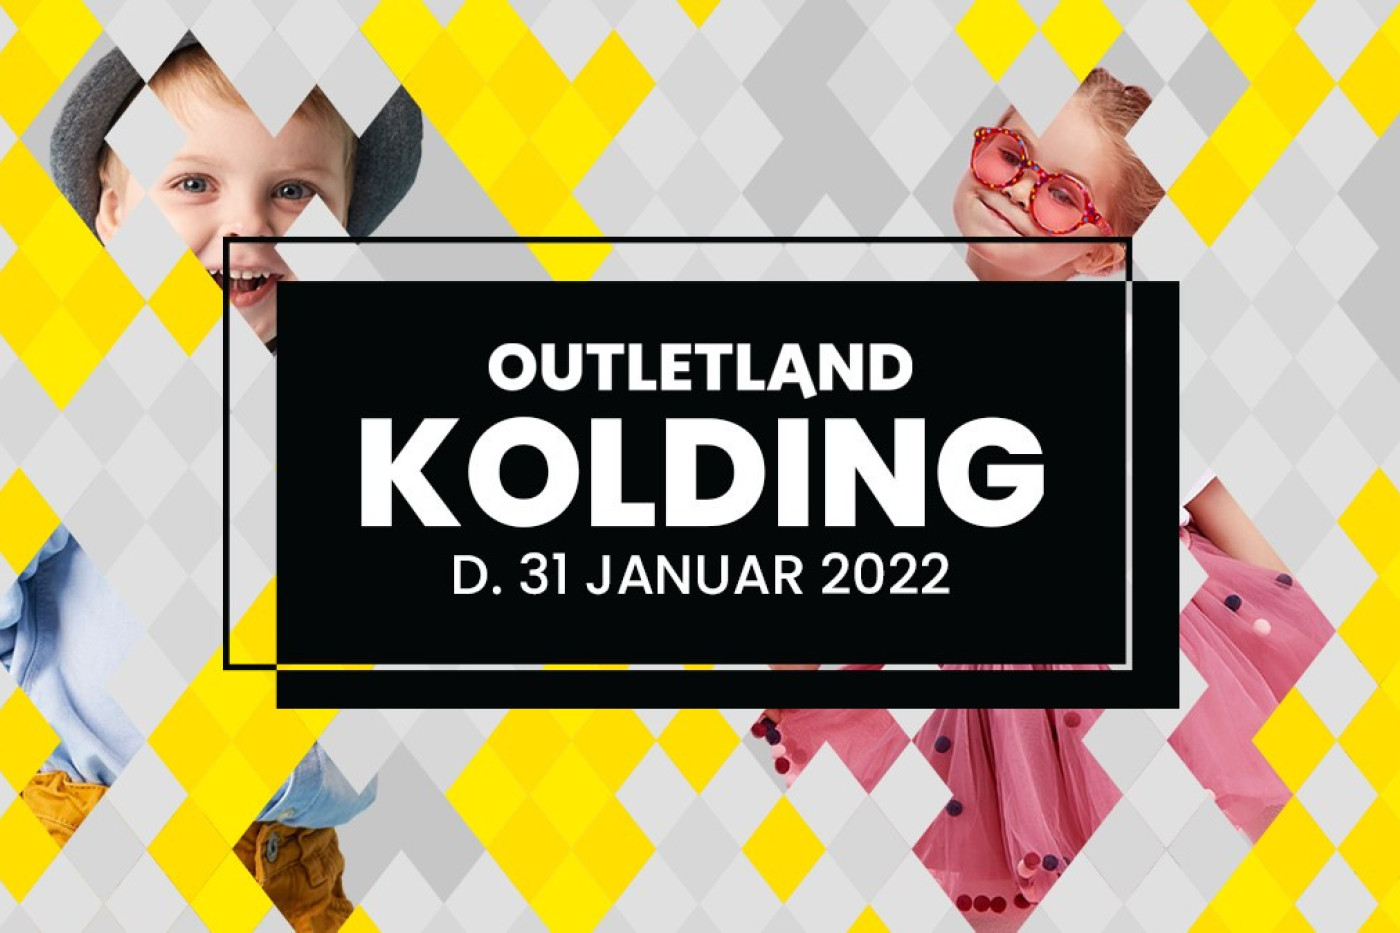 Outletland Kolding